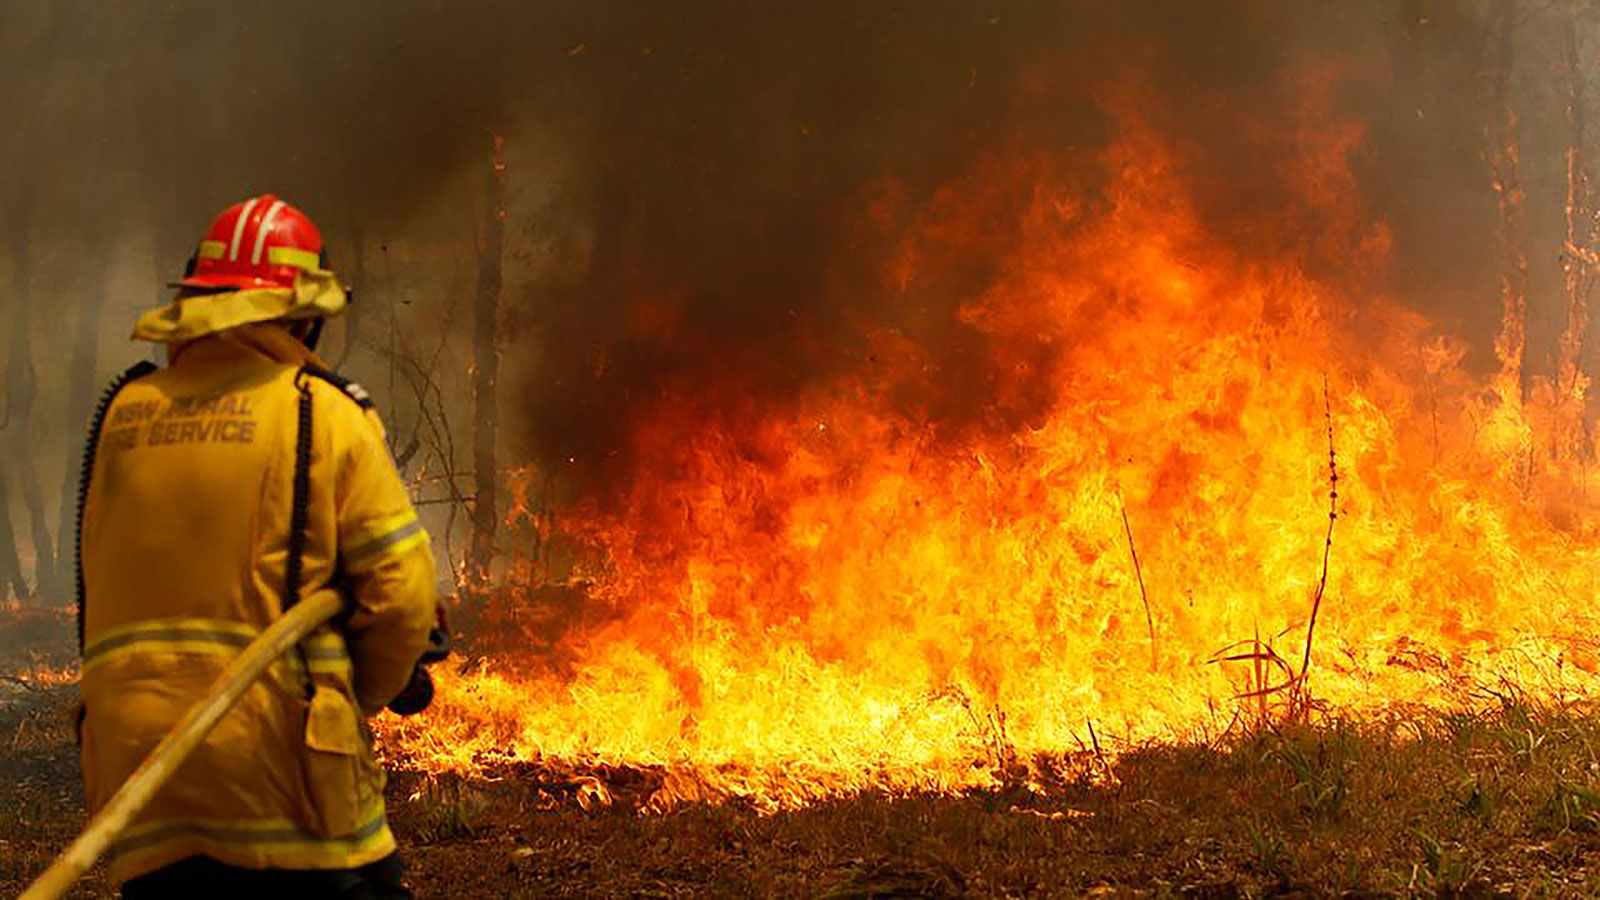 إطفائي أسترالي يُشعل الحرائق ليخمدها!
